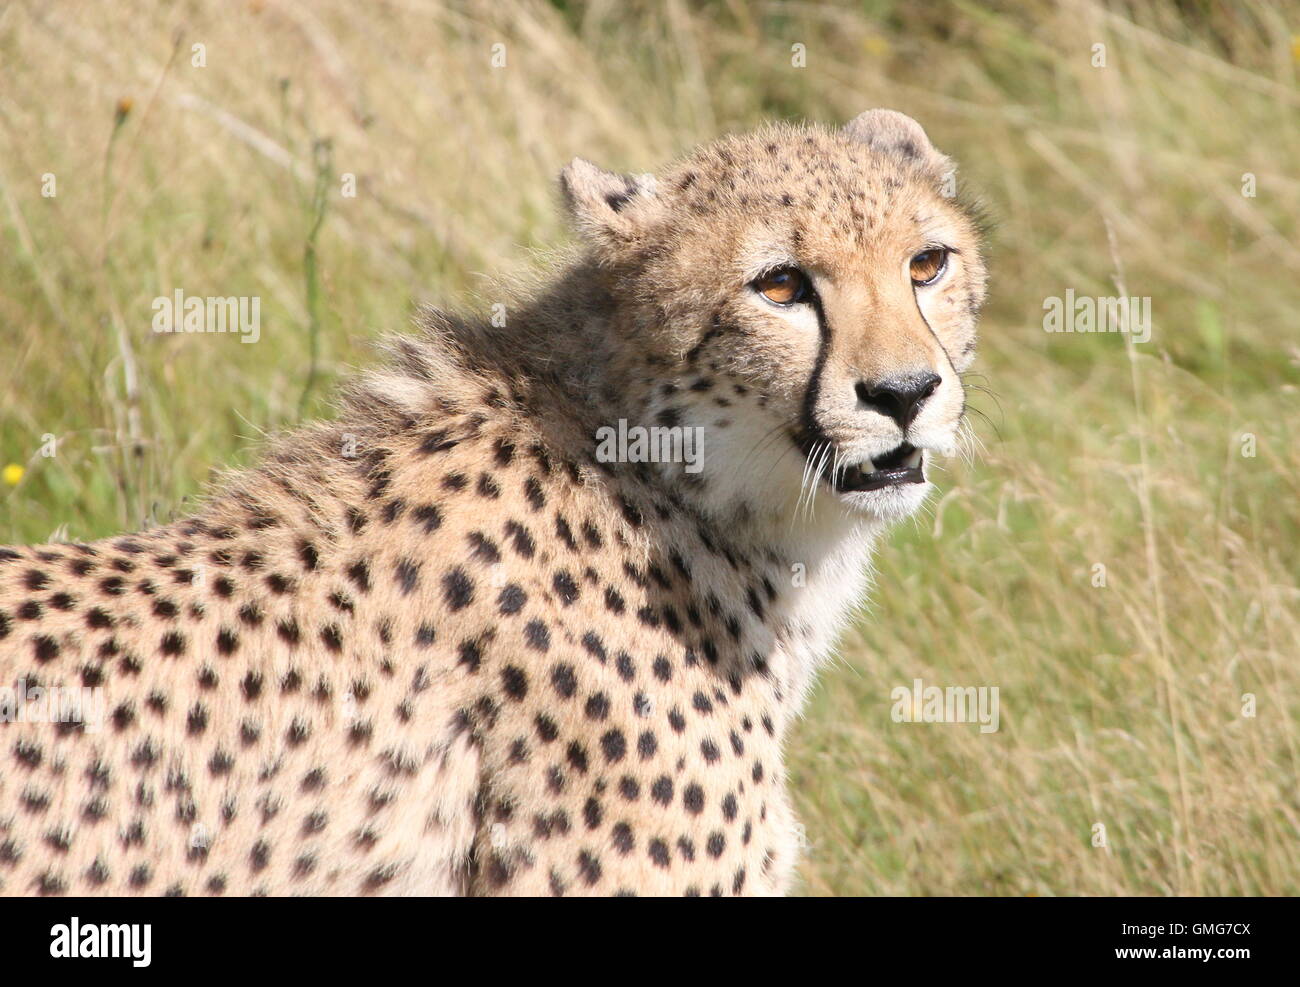 Macho guepardo (Acinonyx jubatus) cerca de la parte superior del cuerpo y la cabeza, gruñendo. Foto de stock